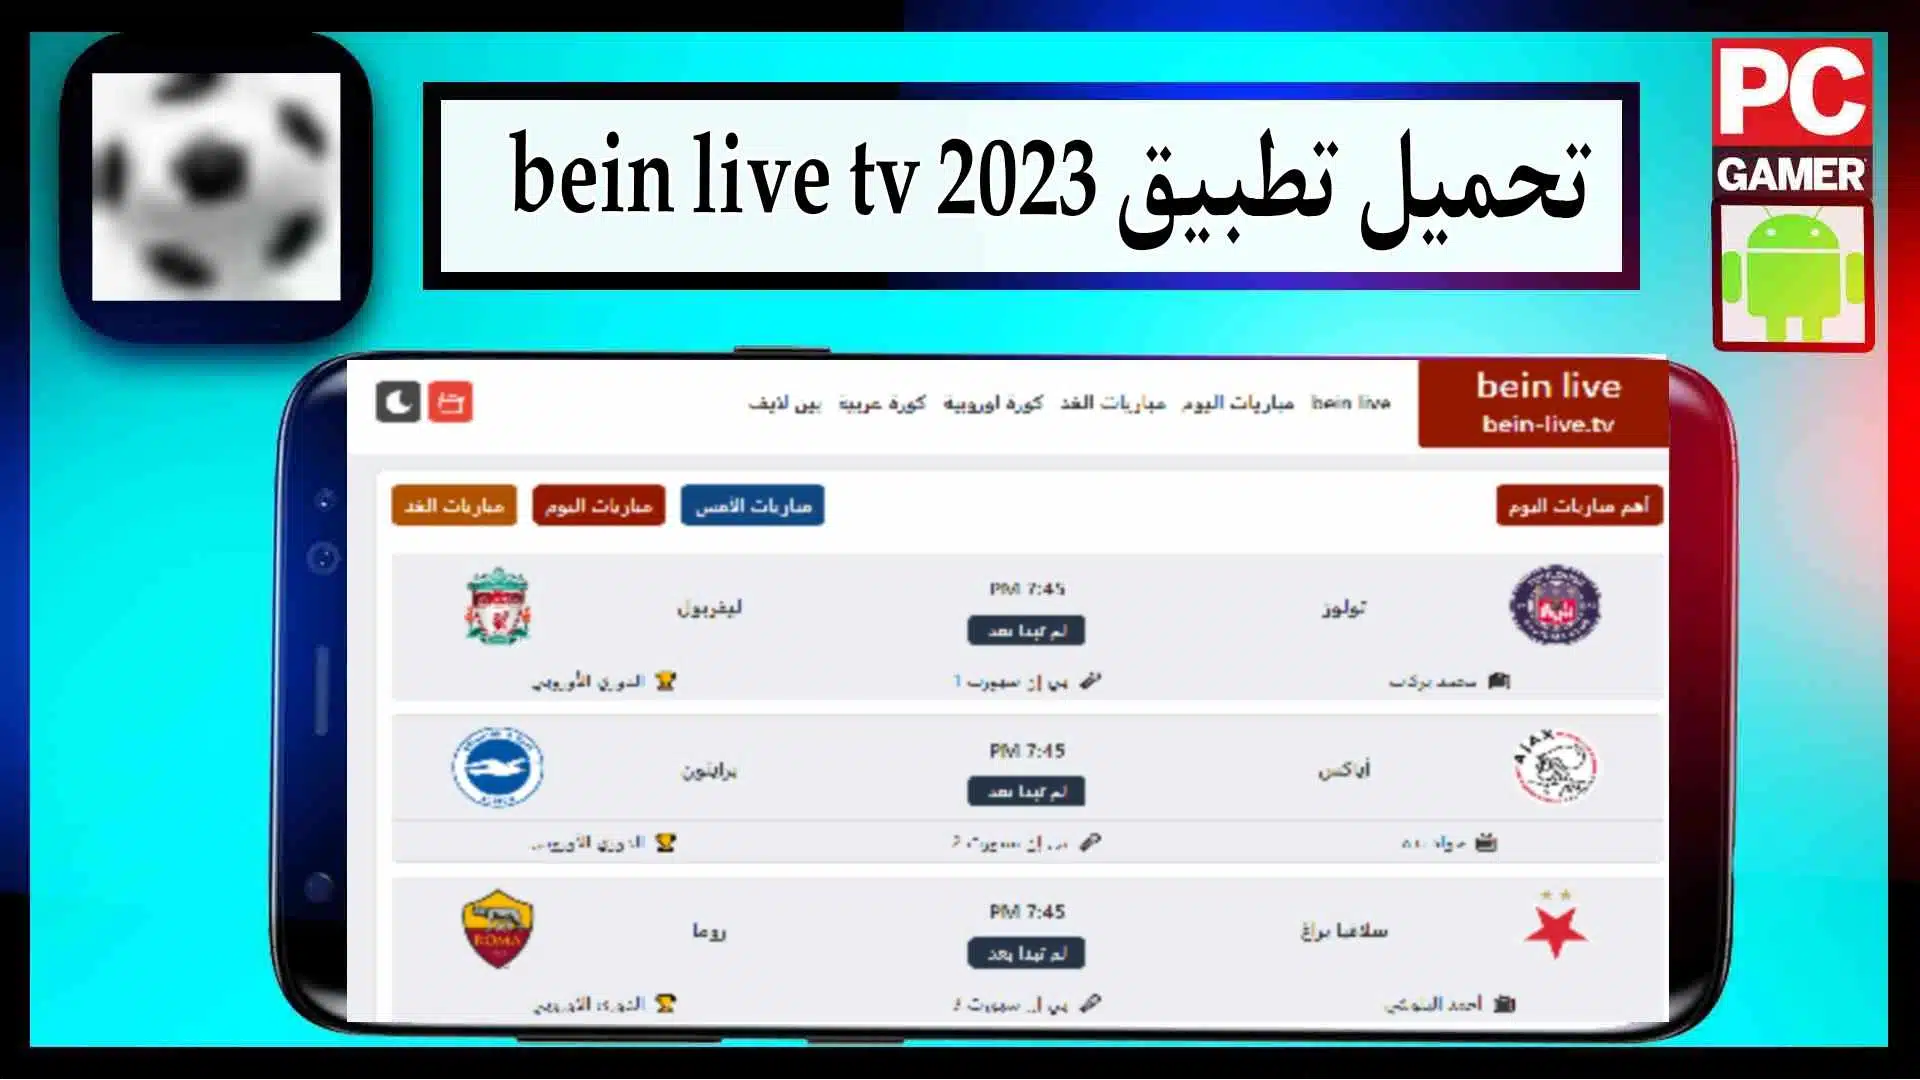 تحميل تطبيق bein live tv لمشاهدة المباريات بث مباشر بدون تقطيع مجانا 2023